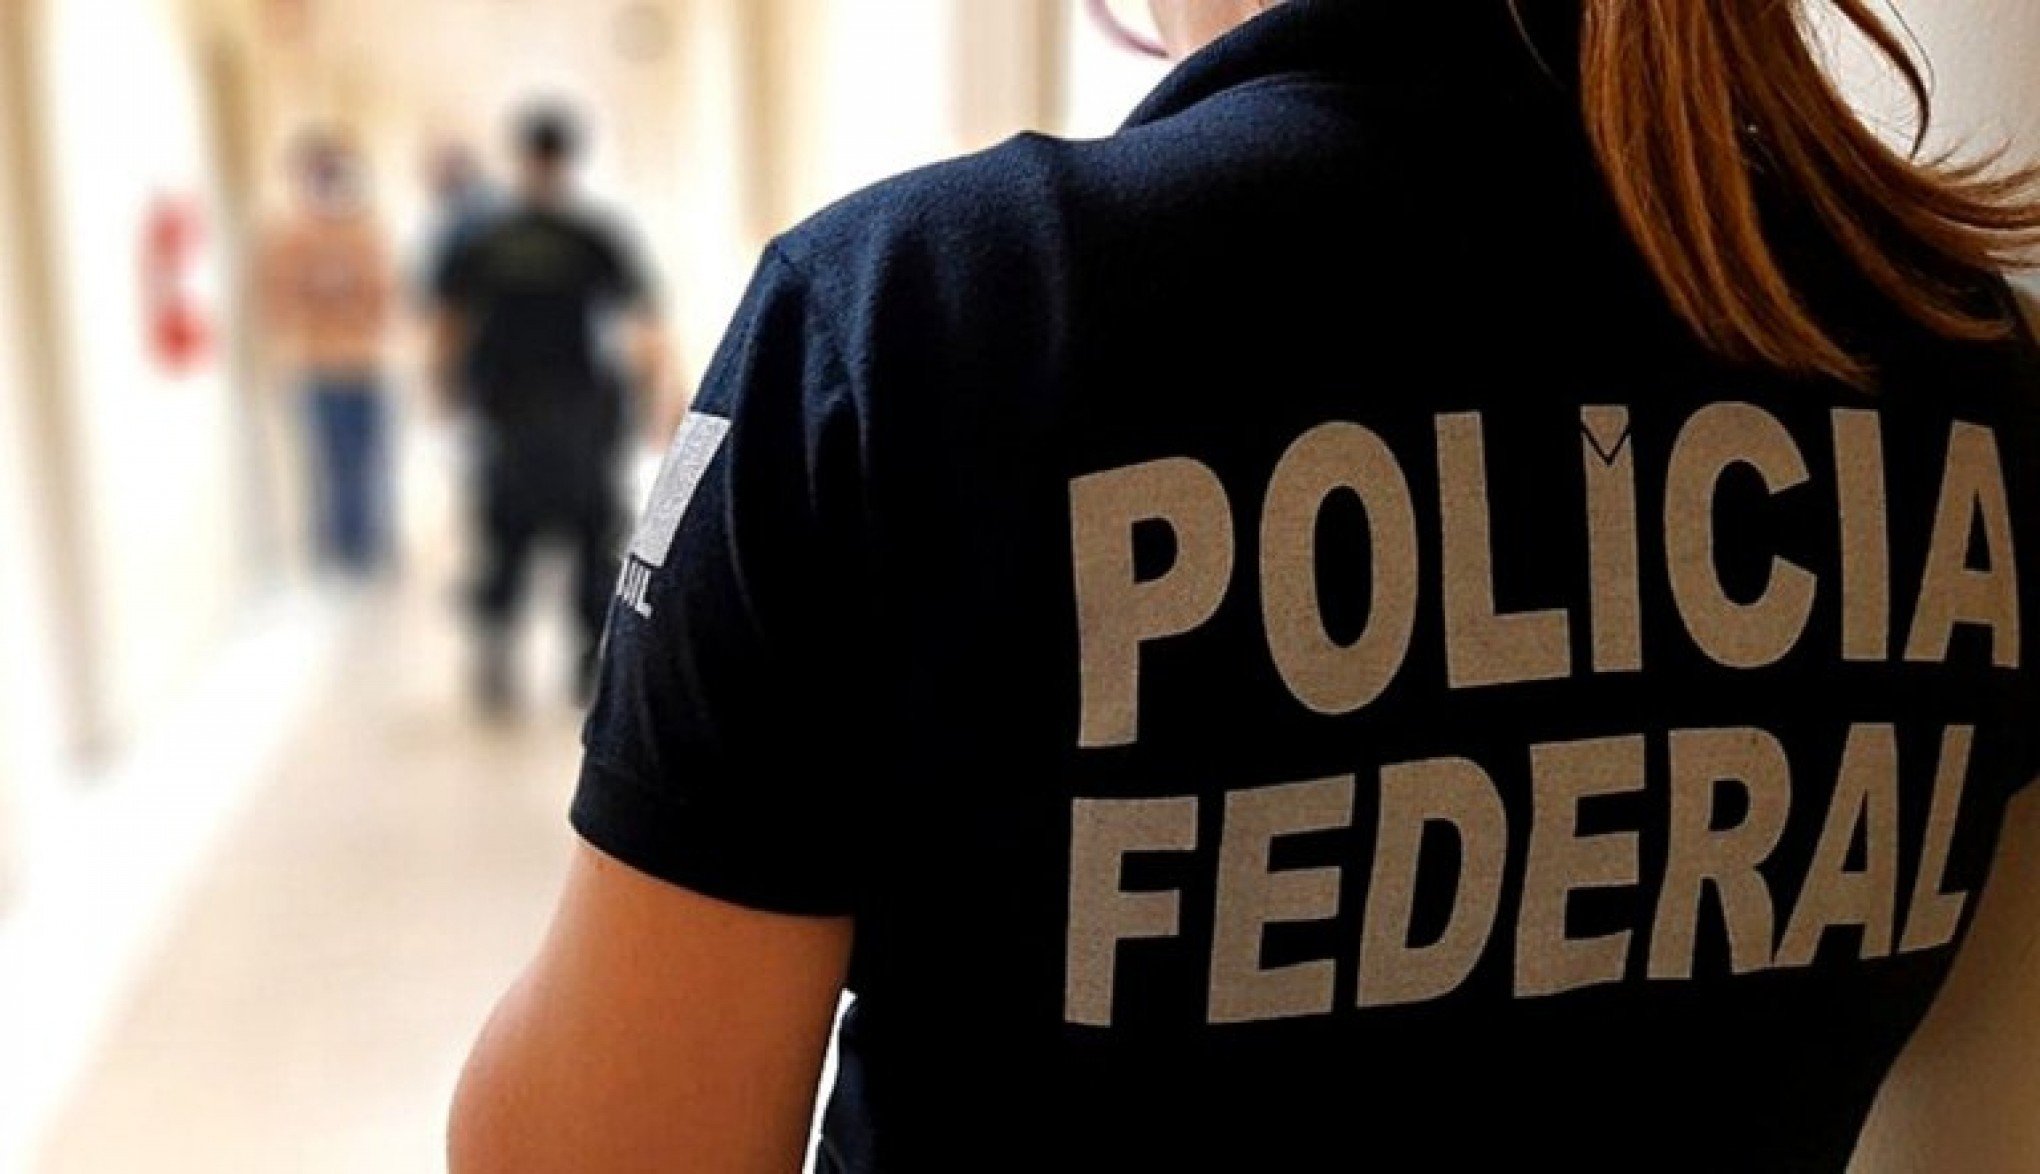 HEZBOLLAH: O que dois brasileiros presos pela Polícia Federal pretendiam em ligação com grupo terrorista